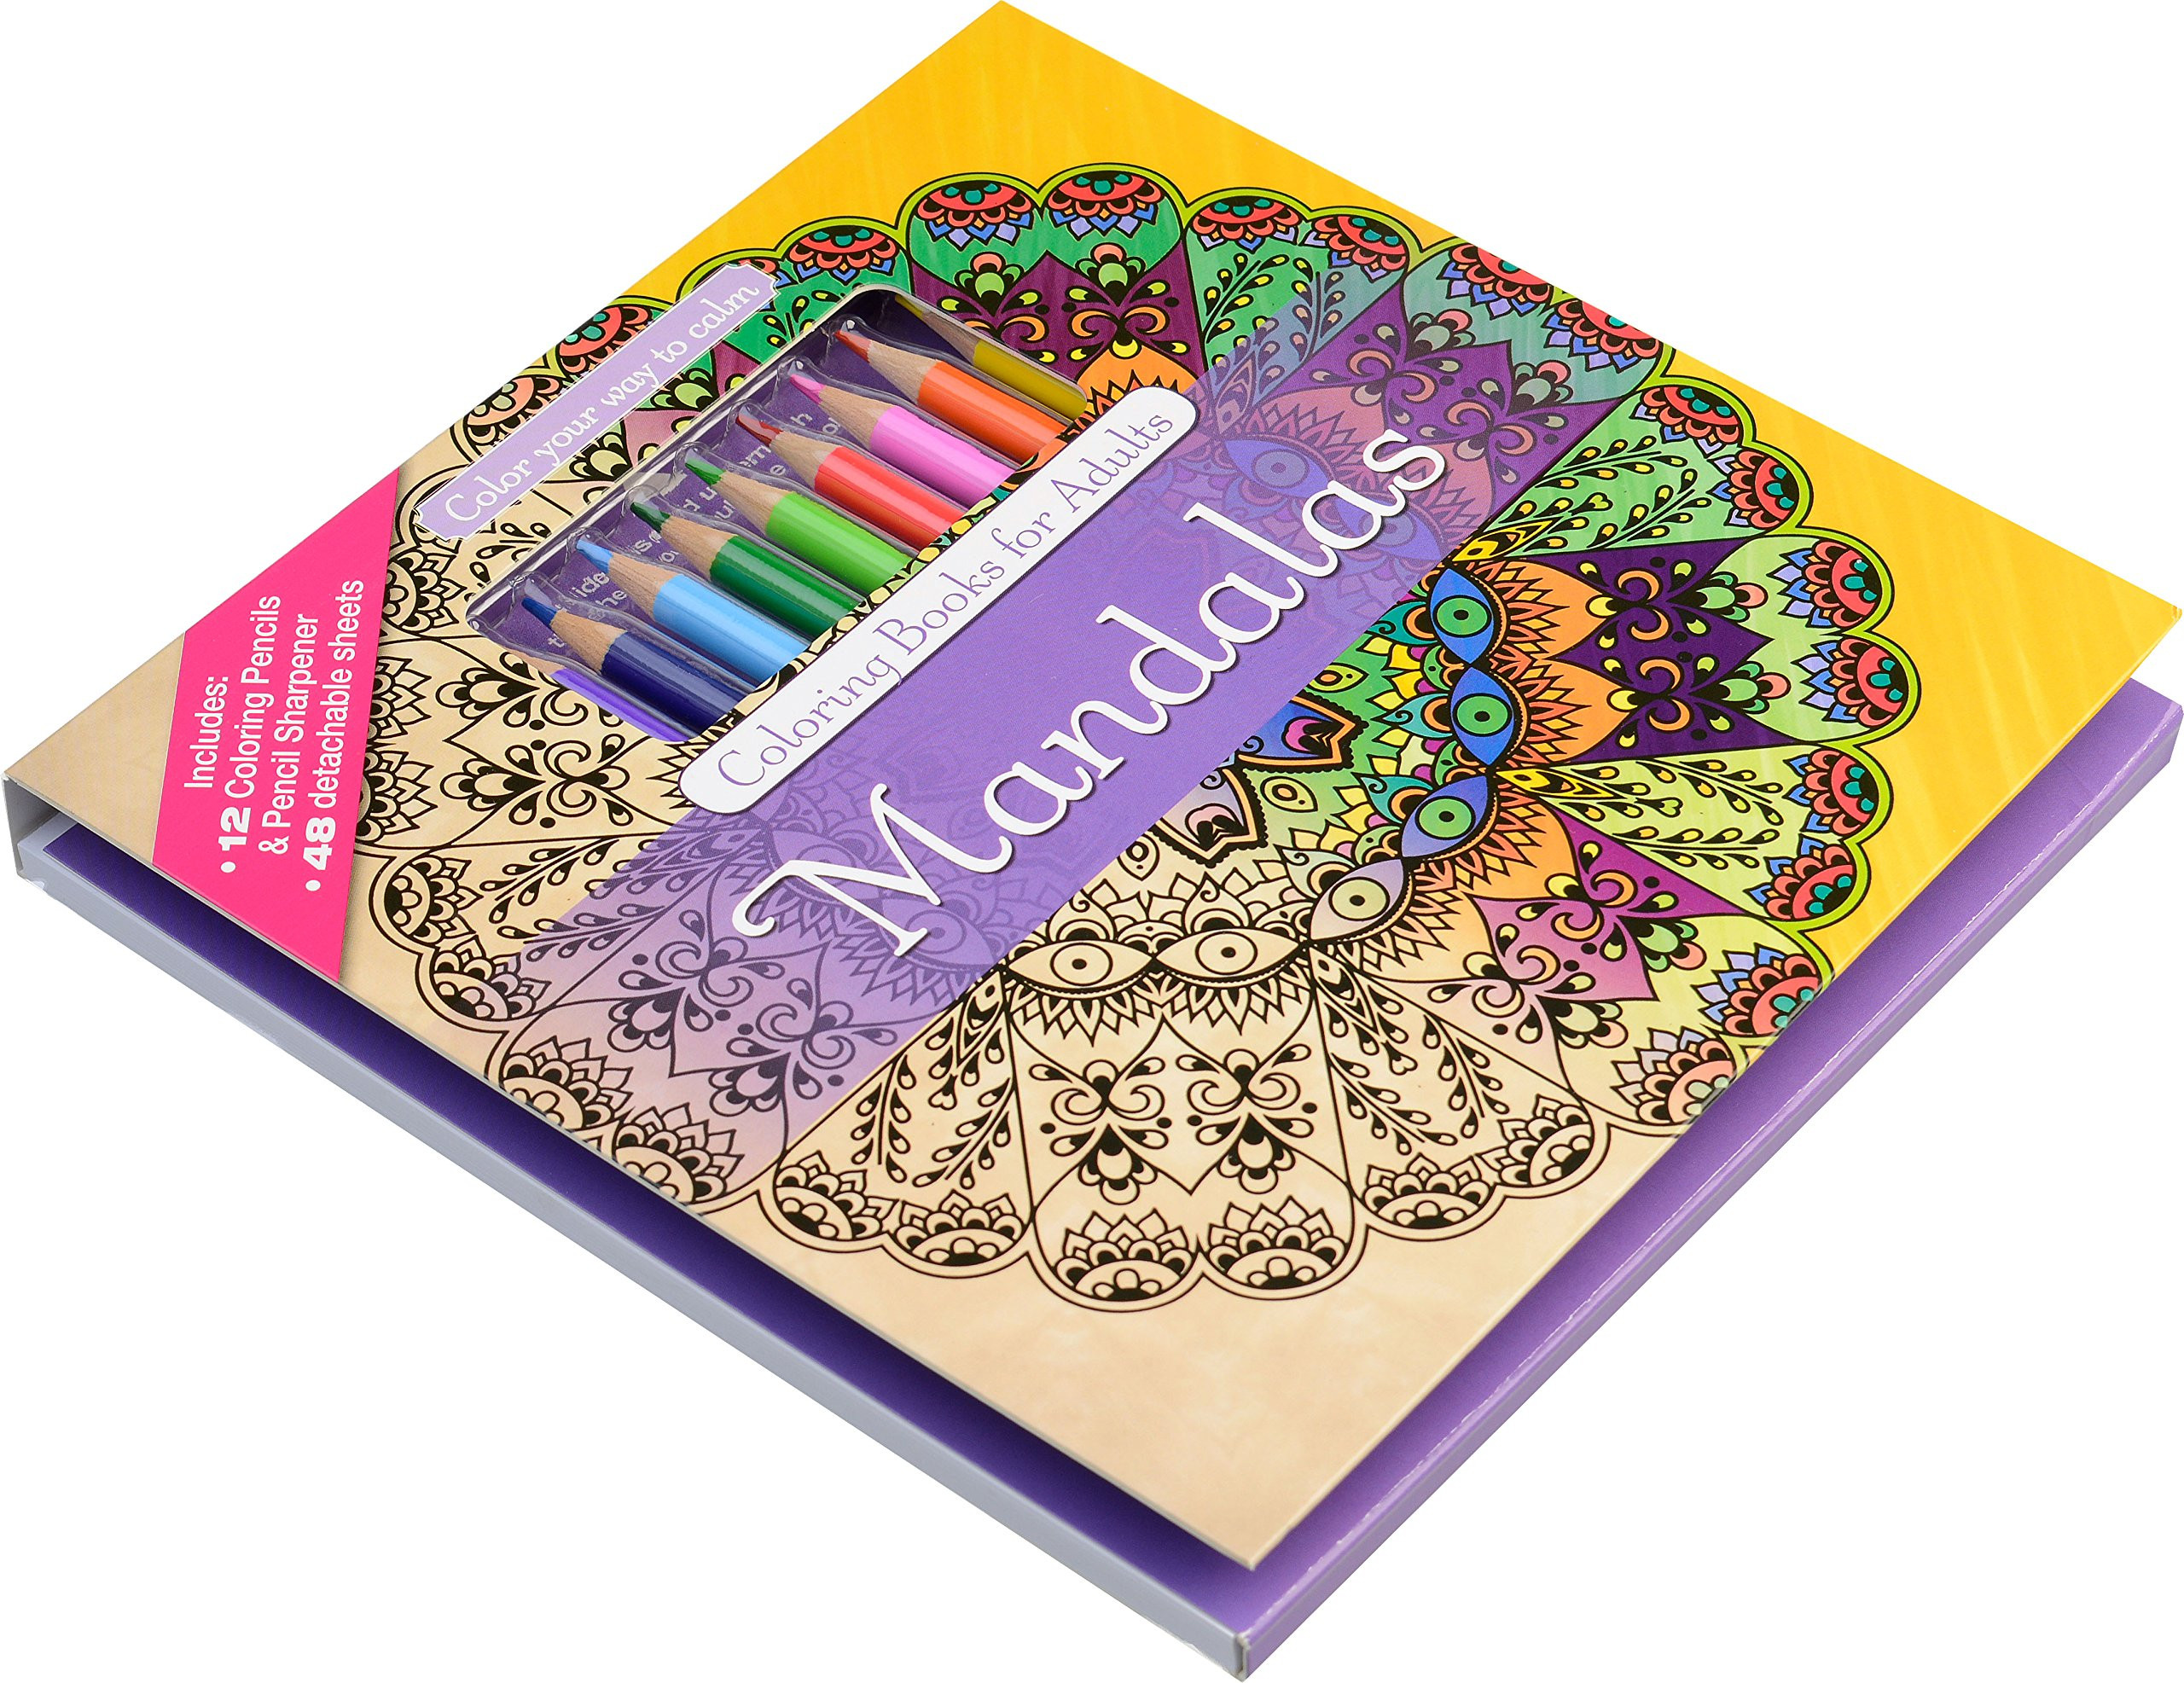 Adult Coloring Book Pencils
 Mandalas Adult Coloring Book Set With 24 Colored Pencils